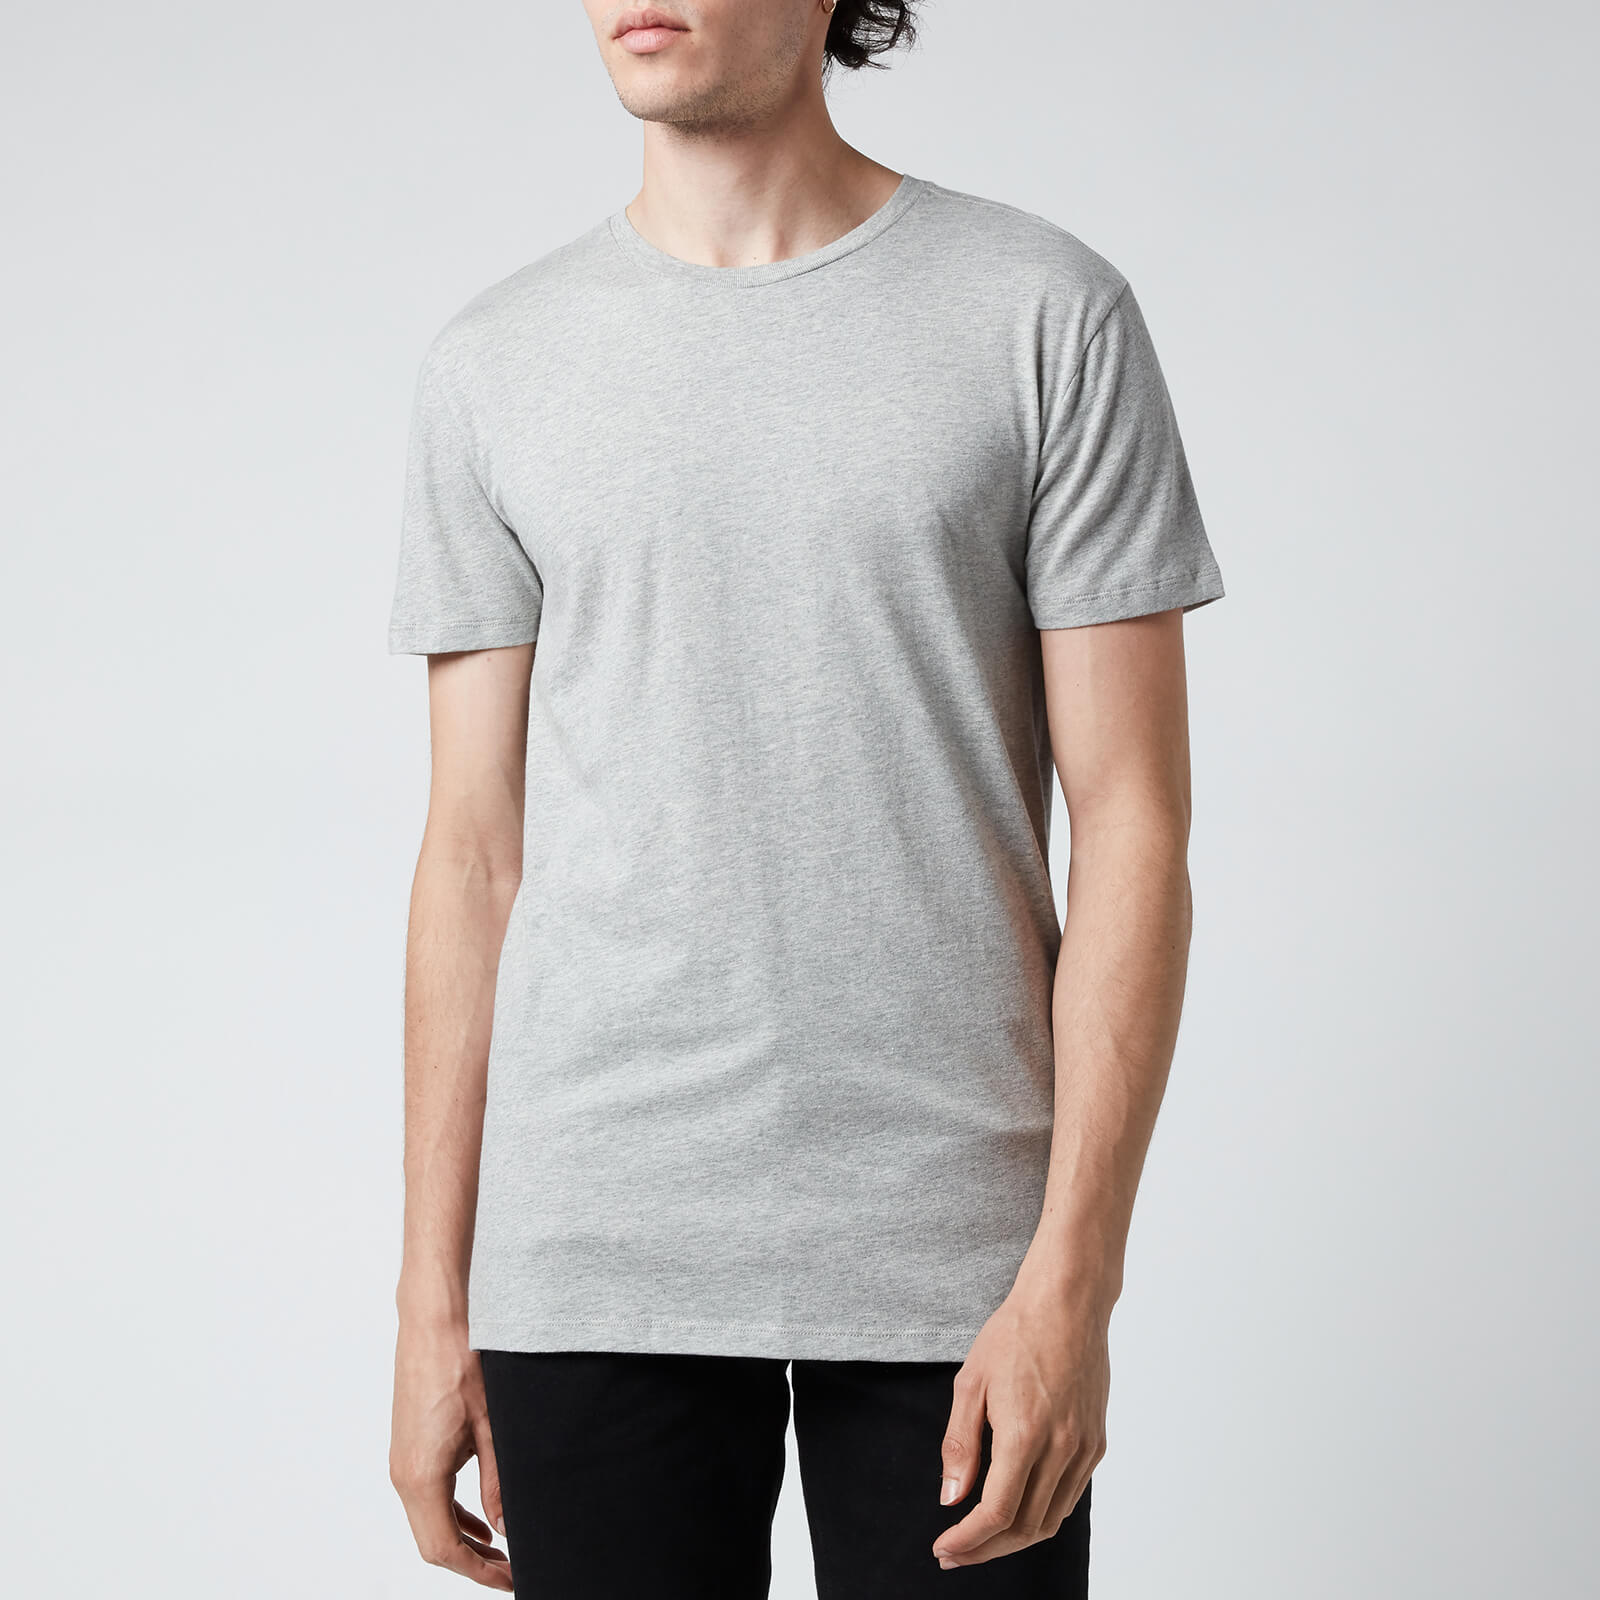 Polo Ralph Lauren Men's Cotton 3-Pack Crewneck T-Shirts - White/Black/Andover Heather - S